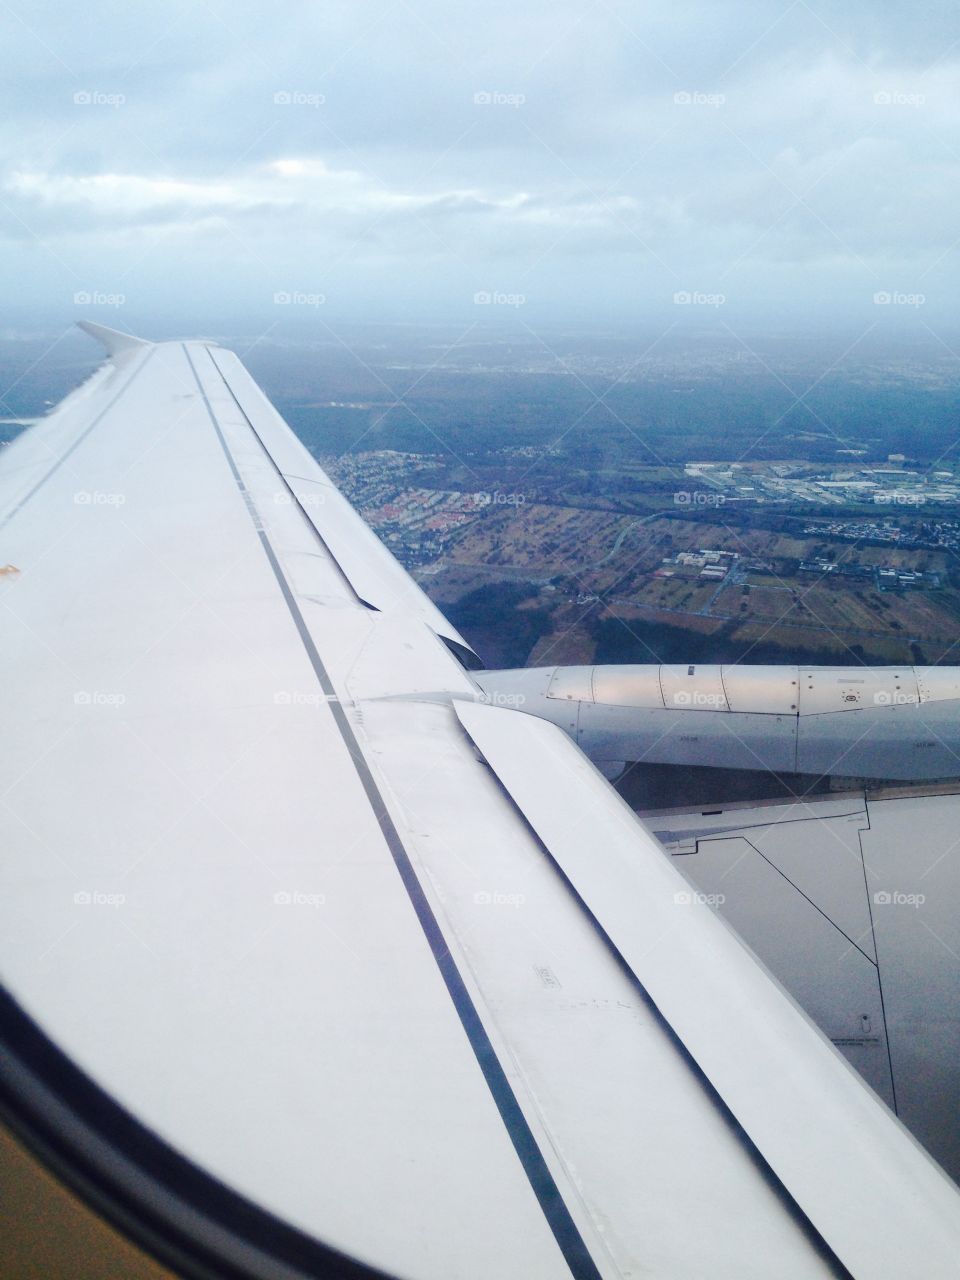 Plane view 